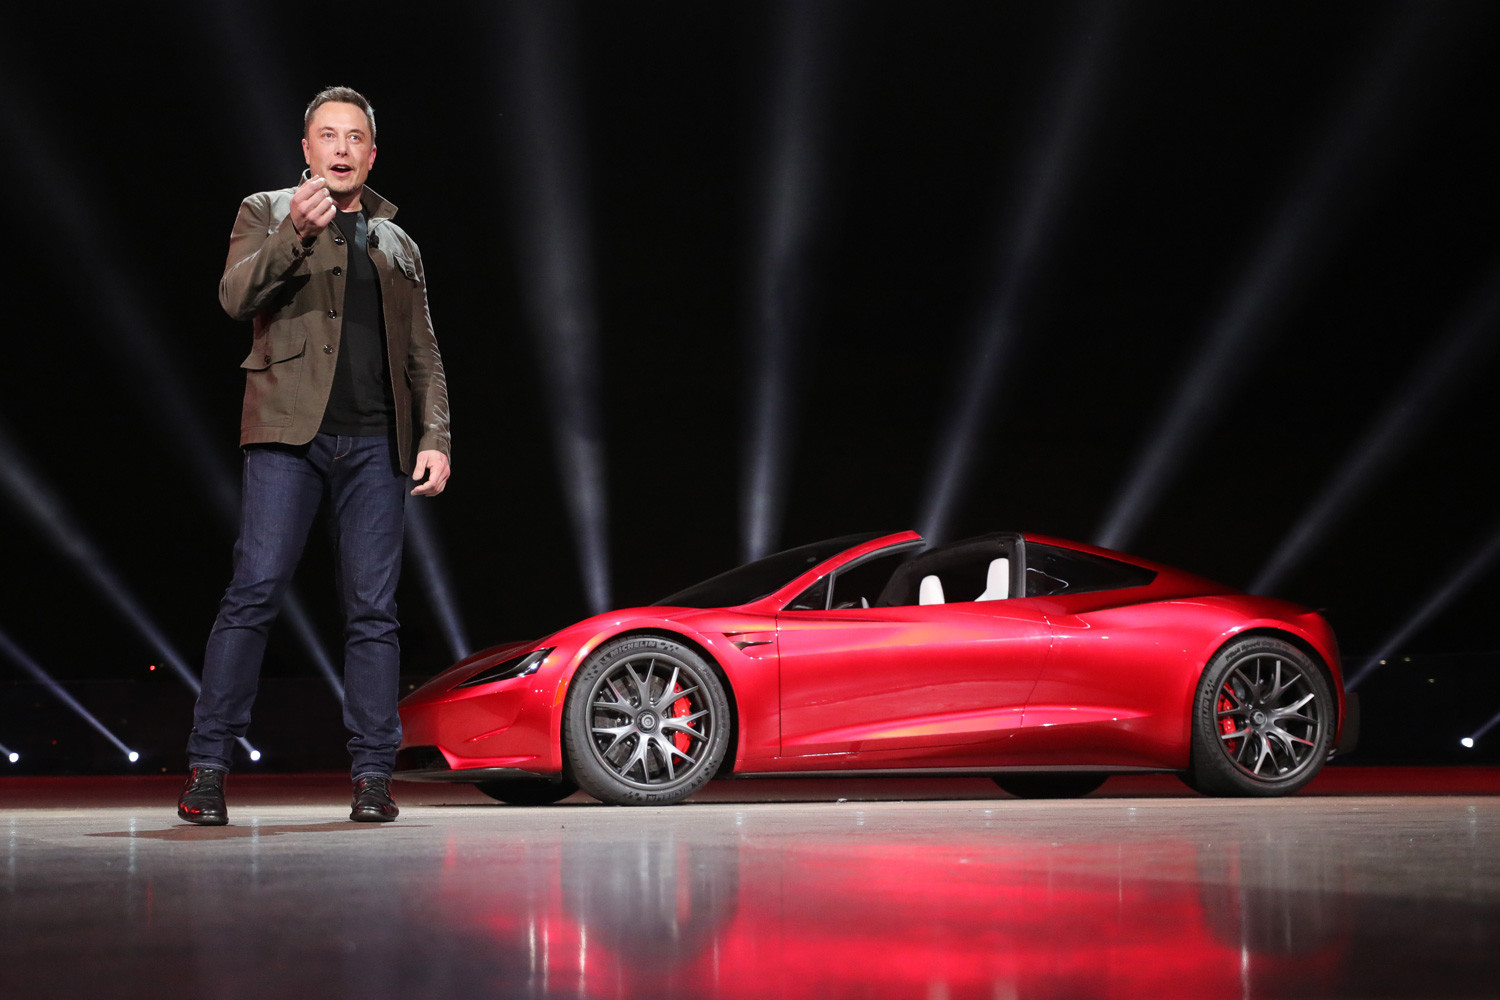 Tesla Motors 2020 Roadster postiže ubrzanje 96 km/h za 1,9 s, a do 160 km/h stiže za 4,2 s. Tri elektromotora se pune iz baterija kapaciteta 200 kWh što omogućava prelazak nešto manje od 1000 km. Stiže na tržište 2020. po cijeni od 250 000 dolara za prvih 1000 primjeraka. Horton, SAD, 2017.
